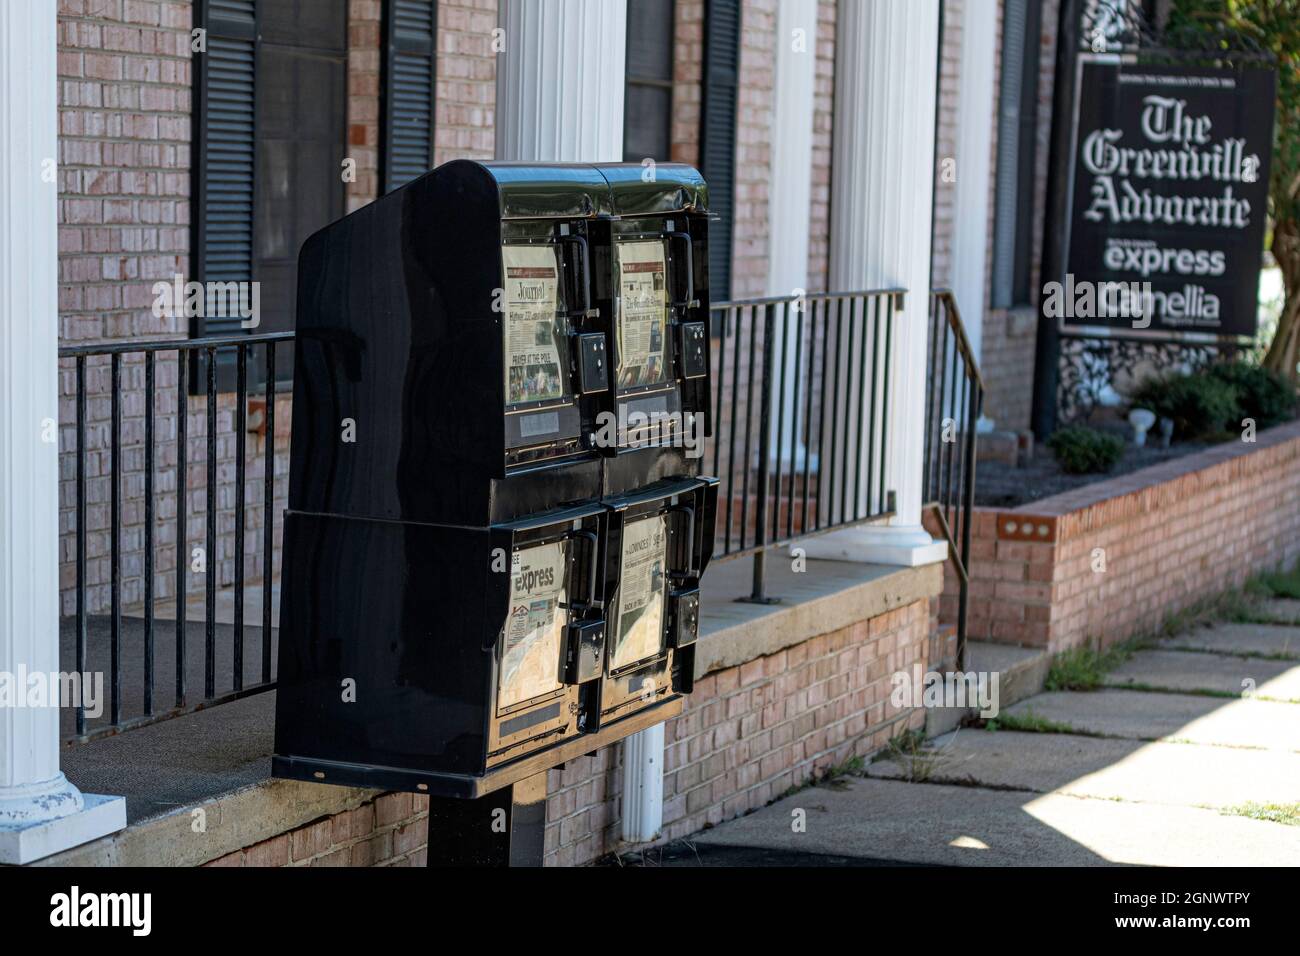 Greenville, Alabama, USA - 24. September 2021: Papierkartons vor dem Büro für den Greenville Advocate, die lokale Zeitung, die der Camilla Cit dient Stockfoto